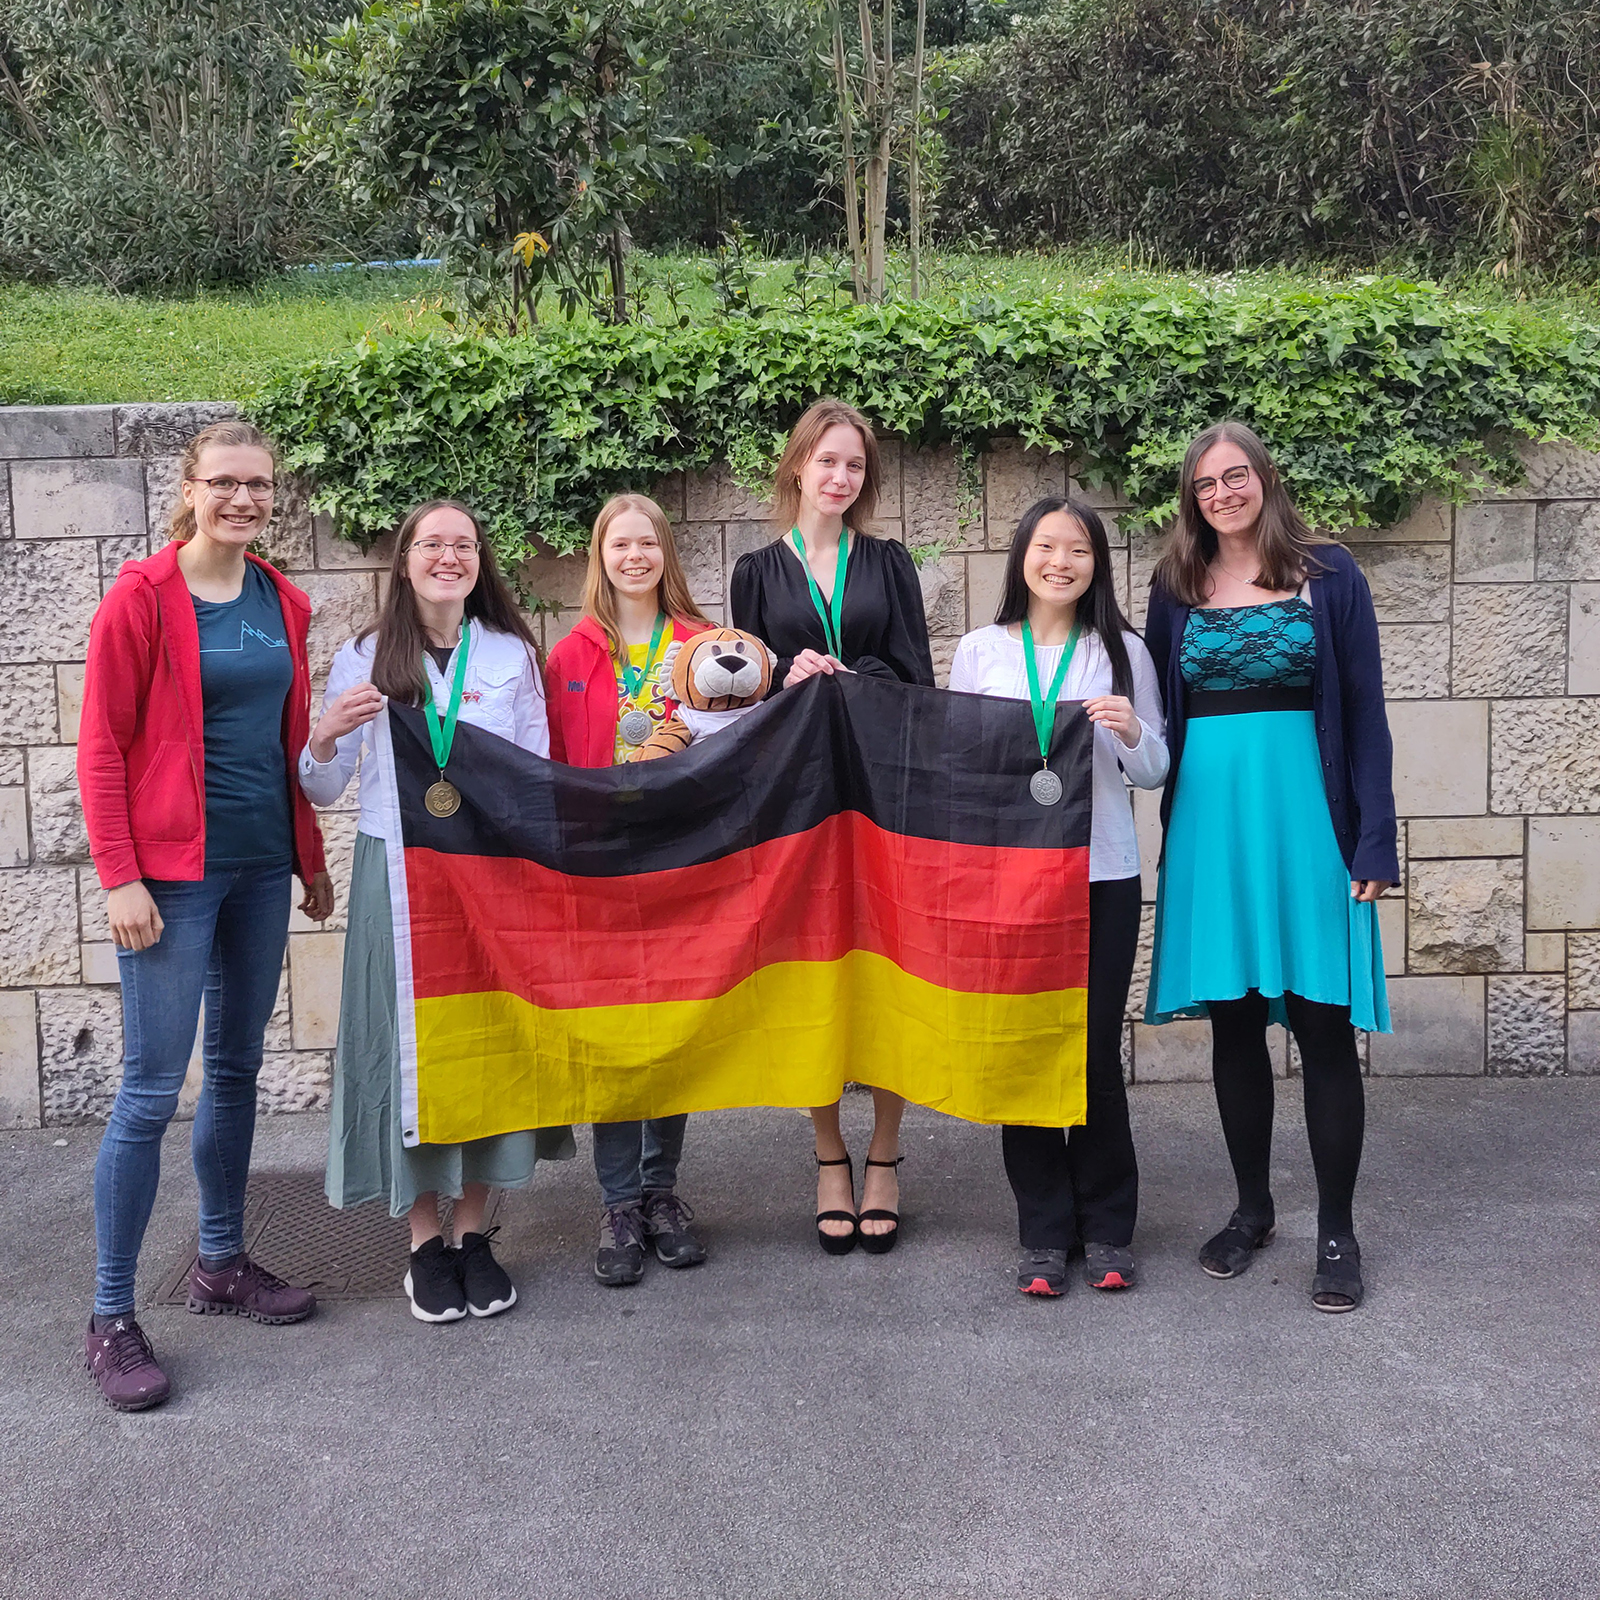 Das deutsche Team bei der EGMO 2023 mit Nationalflagge. Luise Puhlmann (stellv. Delegationsleitung), Réka Wagener, Melia Haase, Vera Lavrova, Tina Ding, Susanne Armbruster (Delegationsleitung)